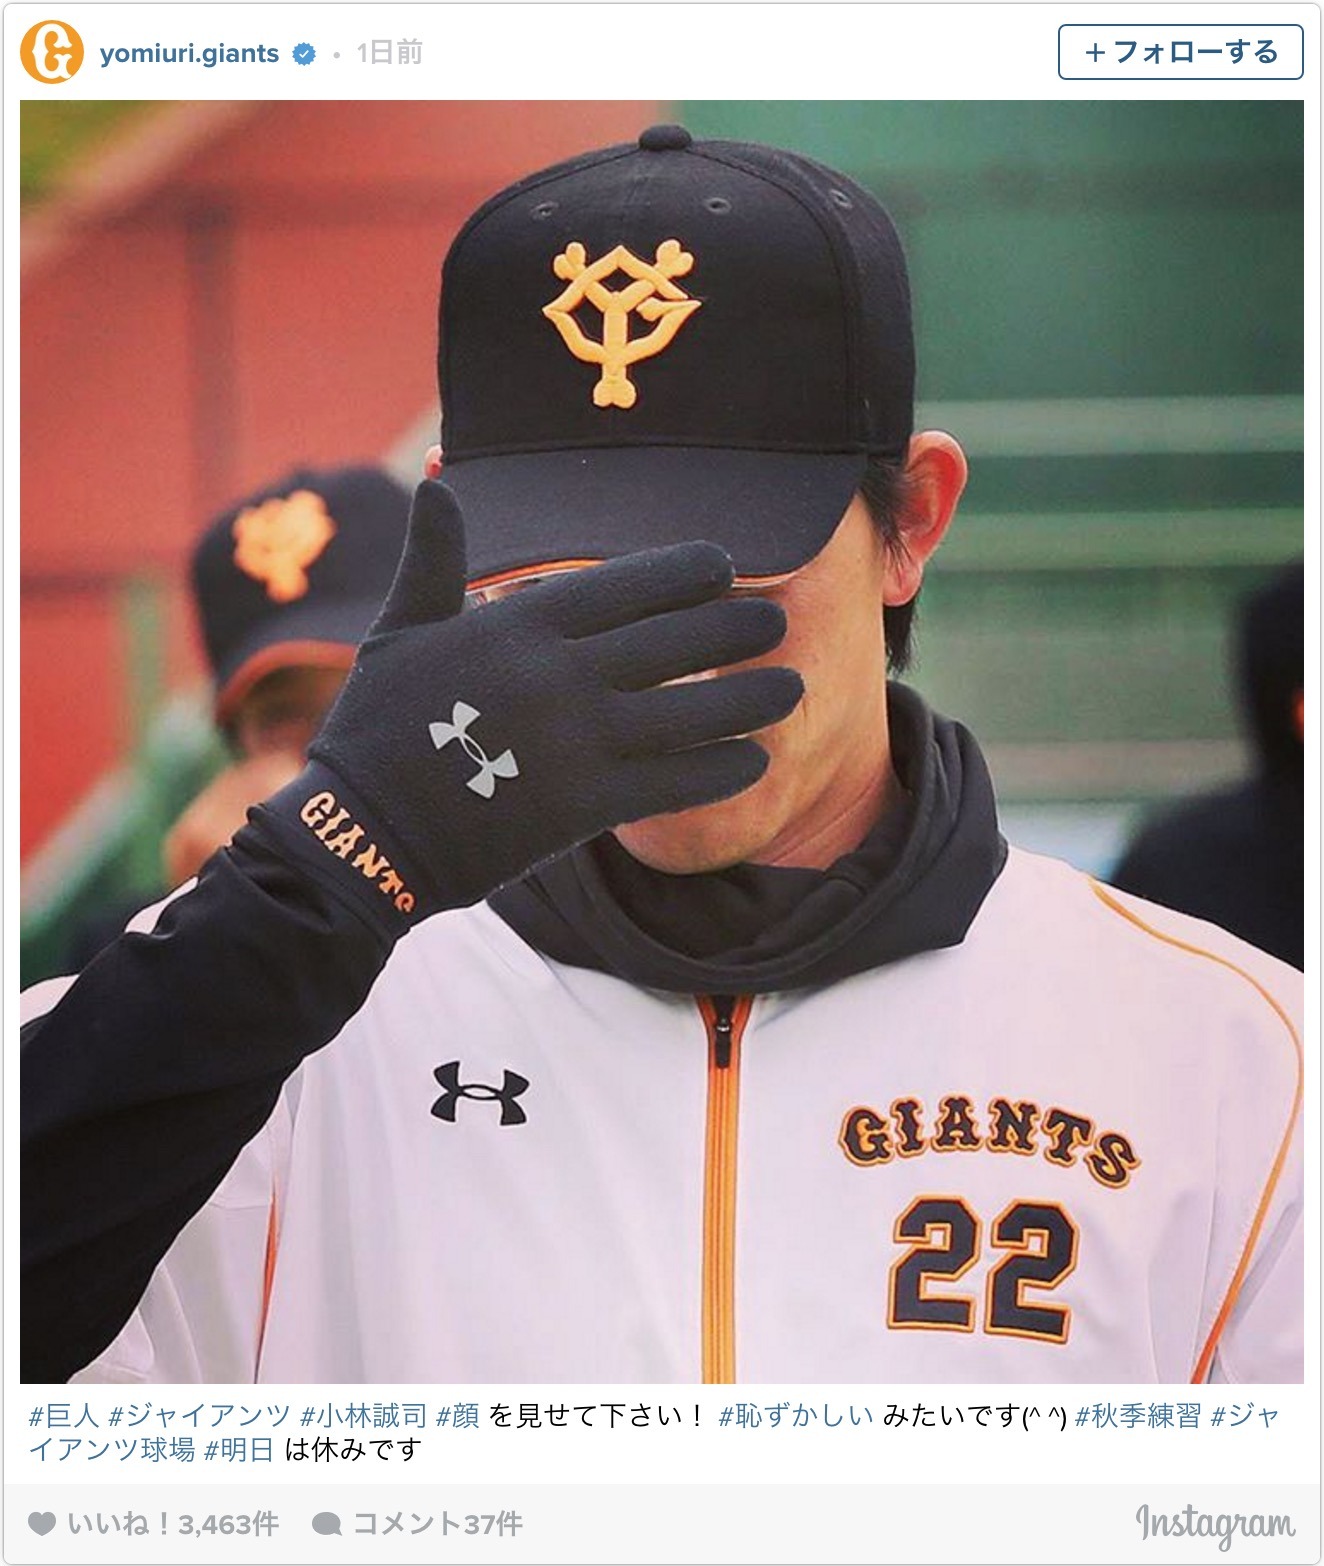 恥ずかしがる巨人の小林誠司 ファン 顔を隠しててもイケメンってわかる Cycle やわらかスポーツ情報サイト